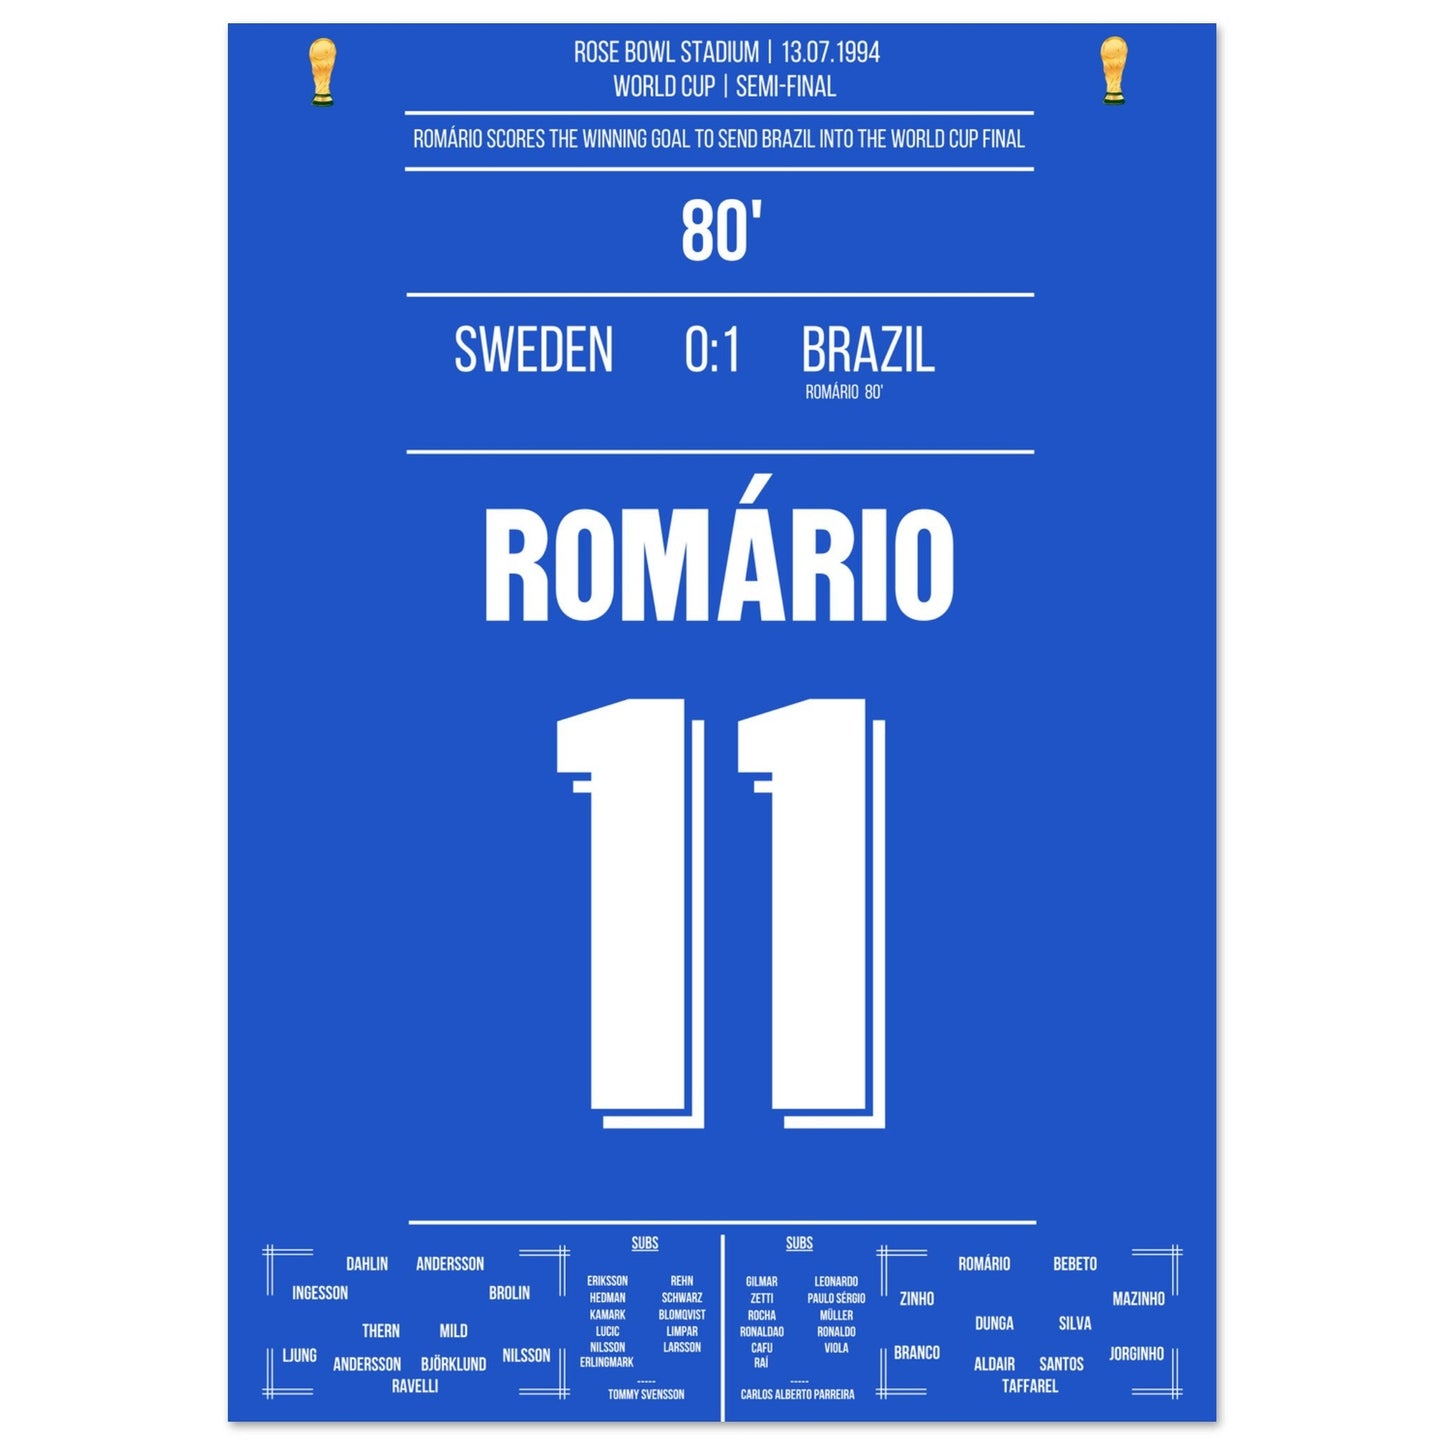 Romario's Siegtreffer im Halbfinale bei der Weltmeisterschaft 1994 